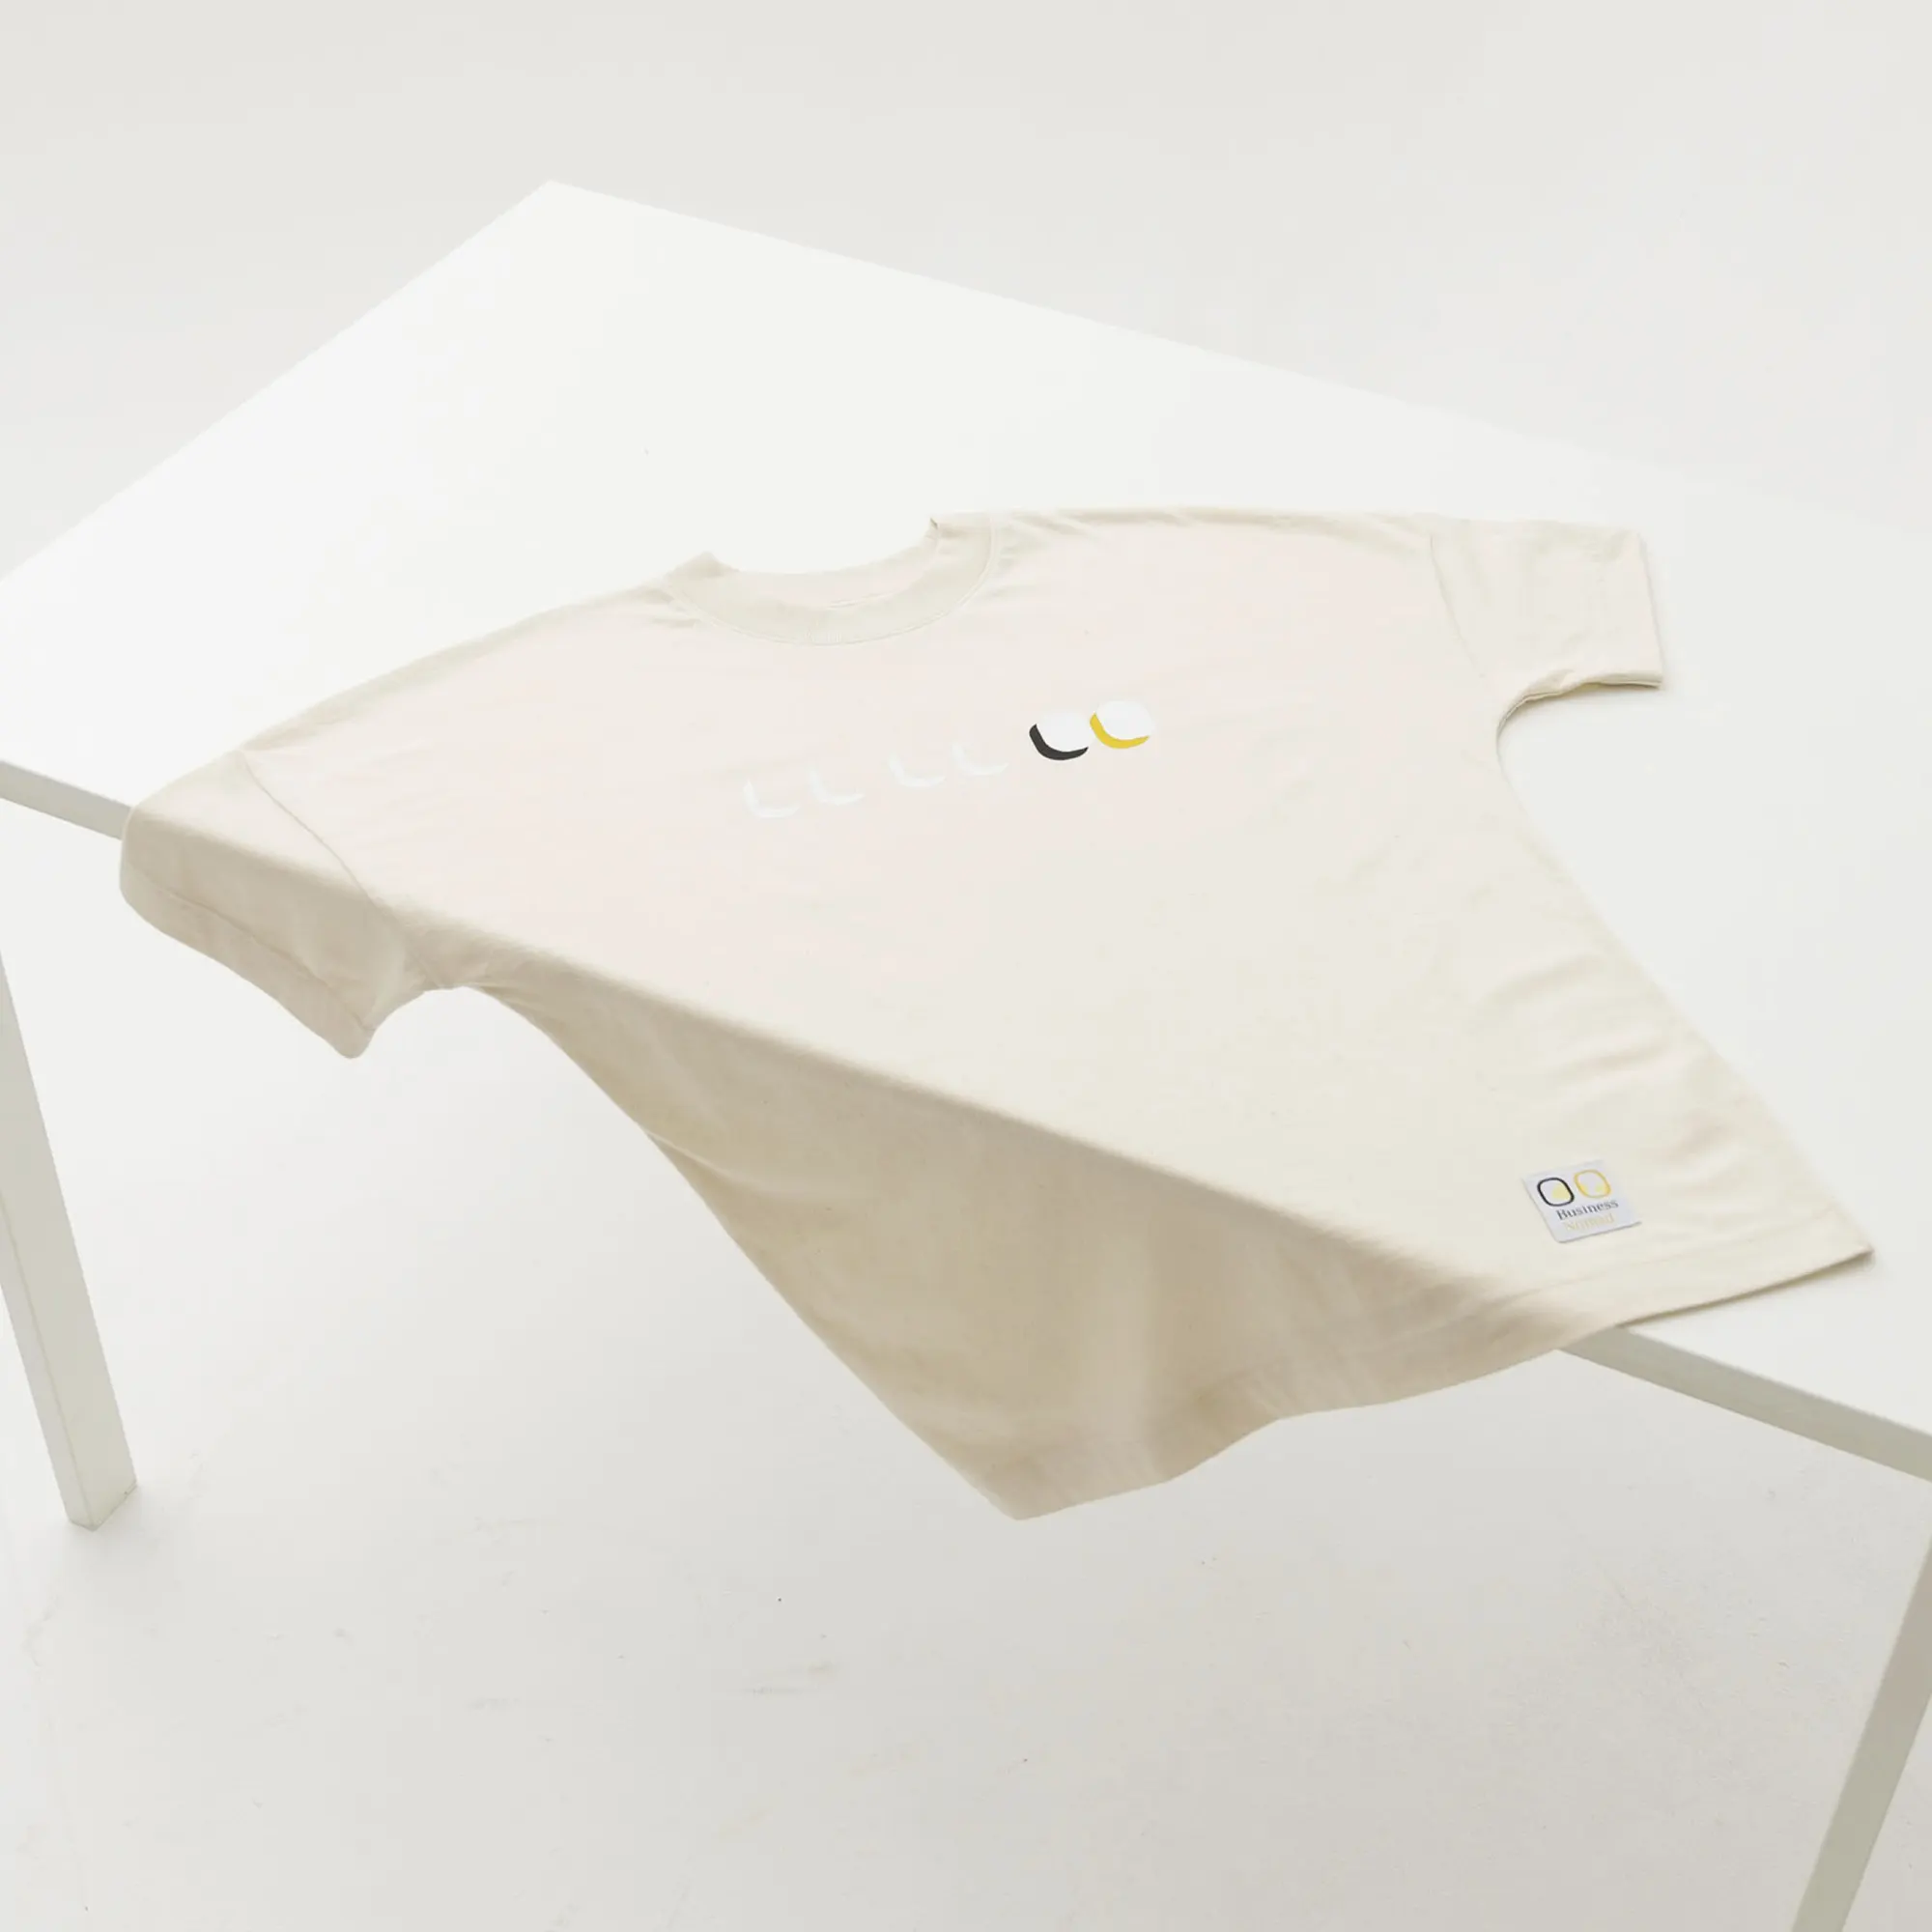 Kaufe das Executive Short Sleeve White von Business Nomad: stylishes unisex oversized T-Shirt in weiß aus 100% gekämmter ringgesponnener Bio-Baumwolle